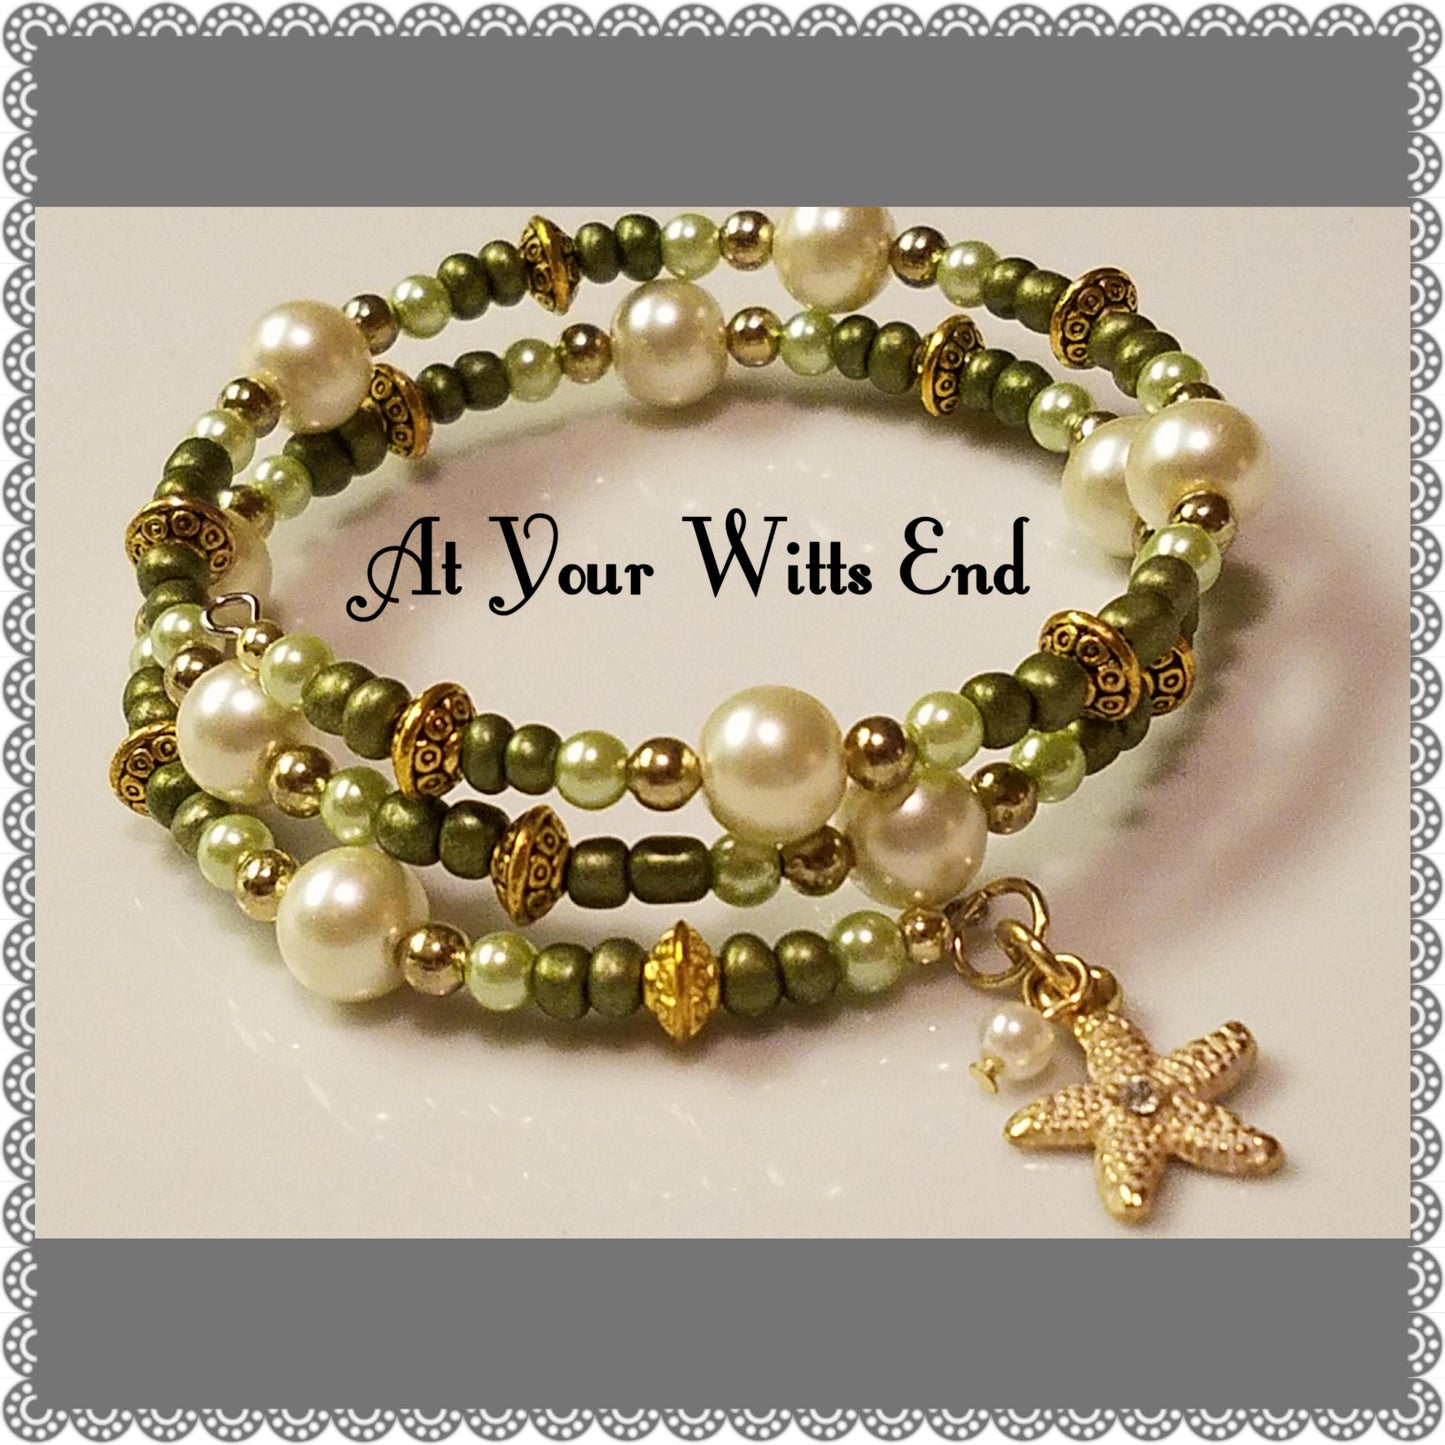 Star Fish Memory Wire Bracelet, beaded Bracelet, beach jewelry, women's jewelry